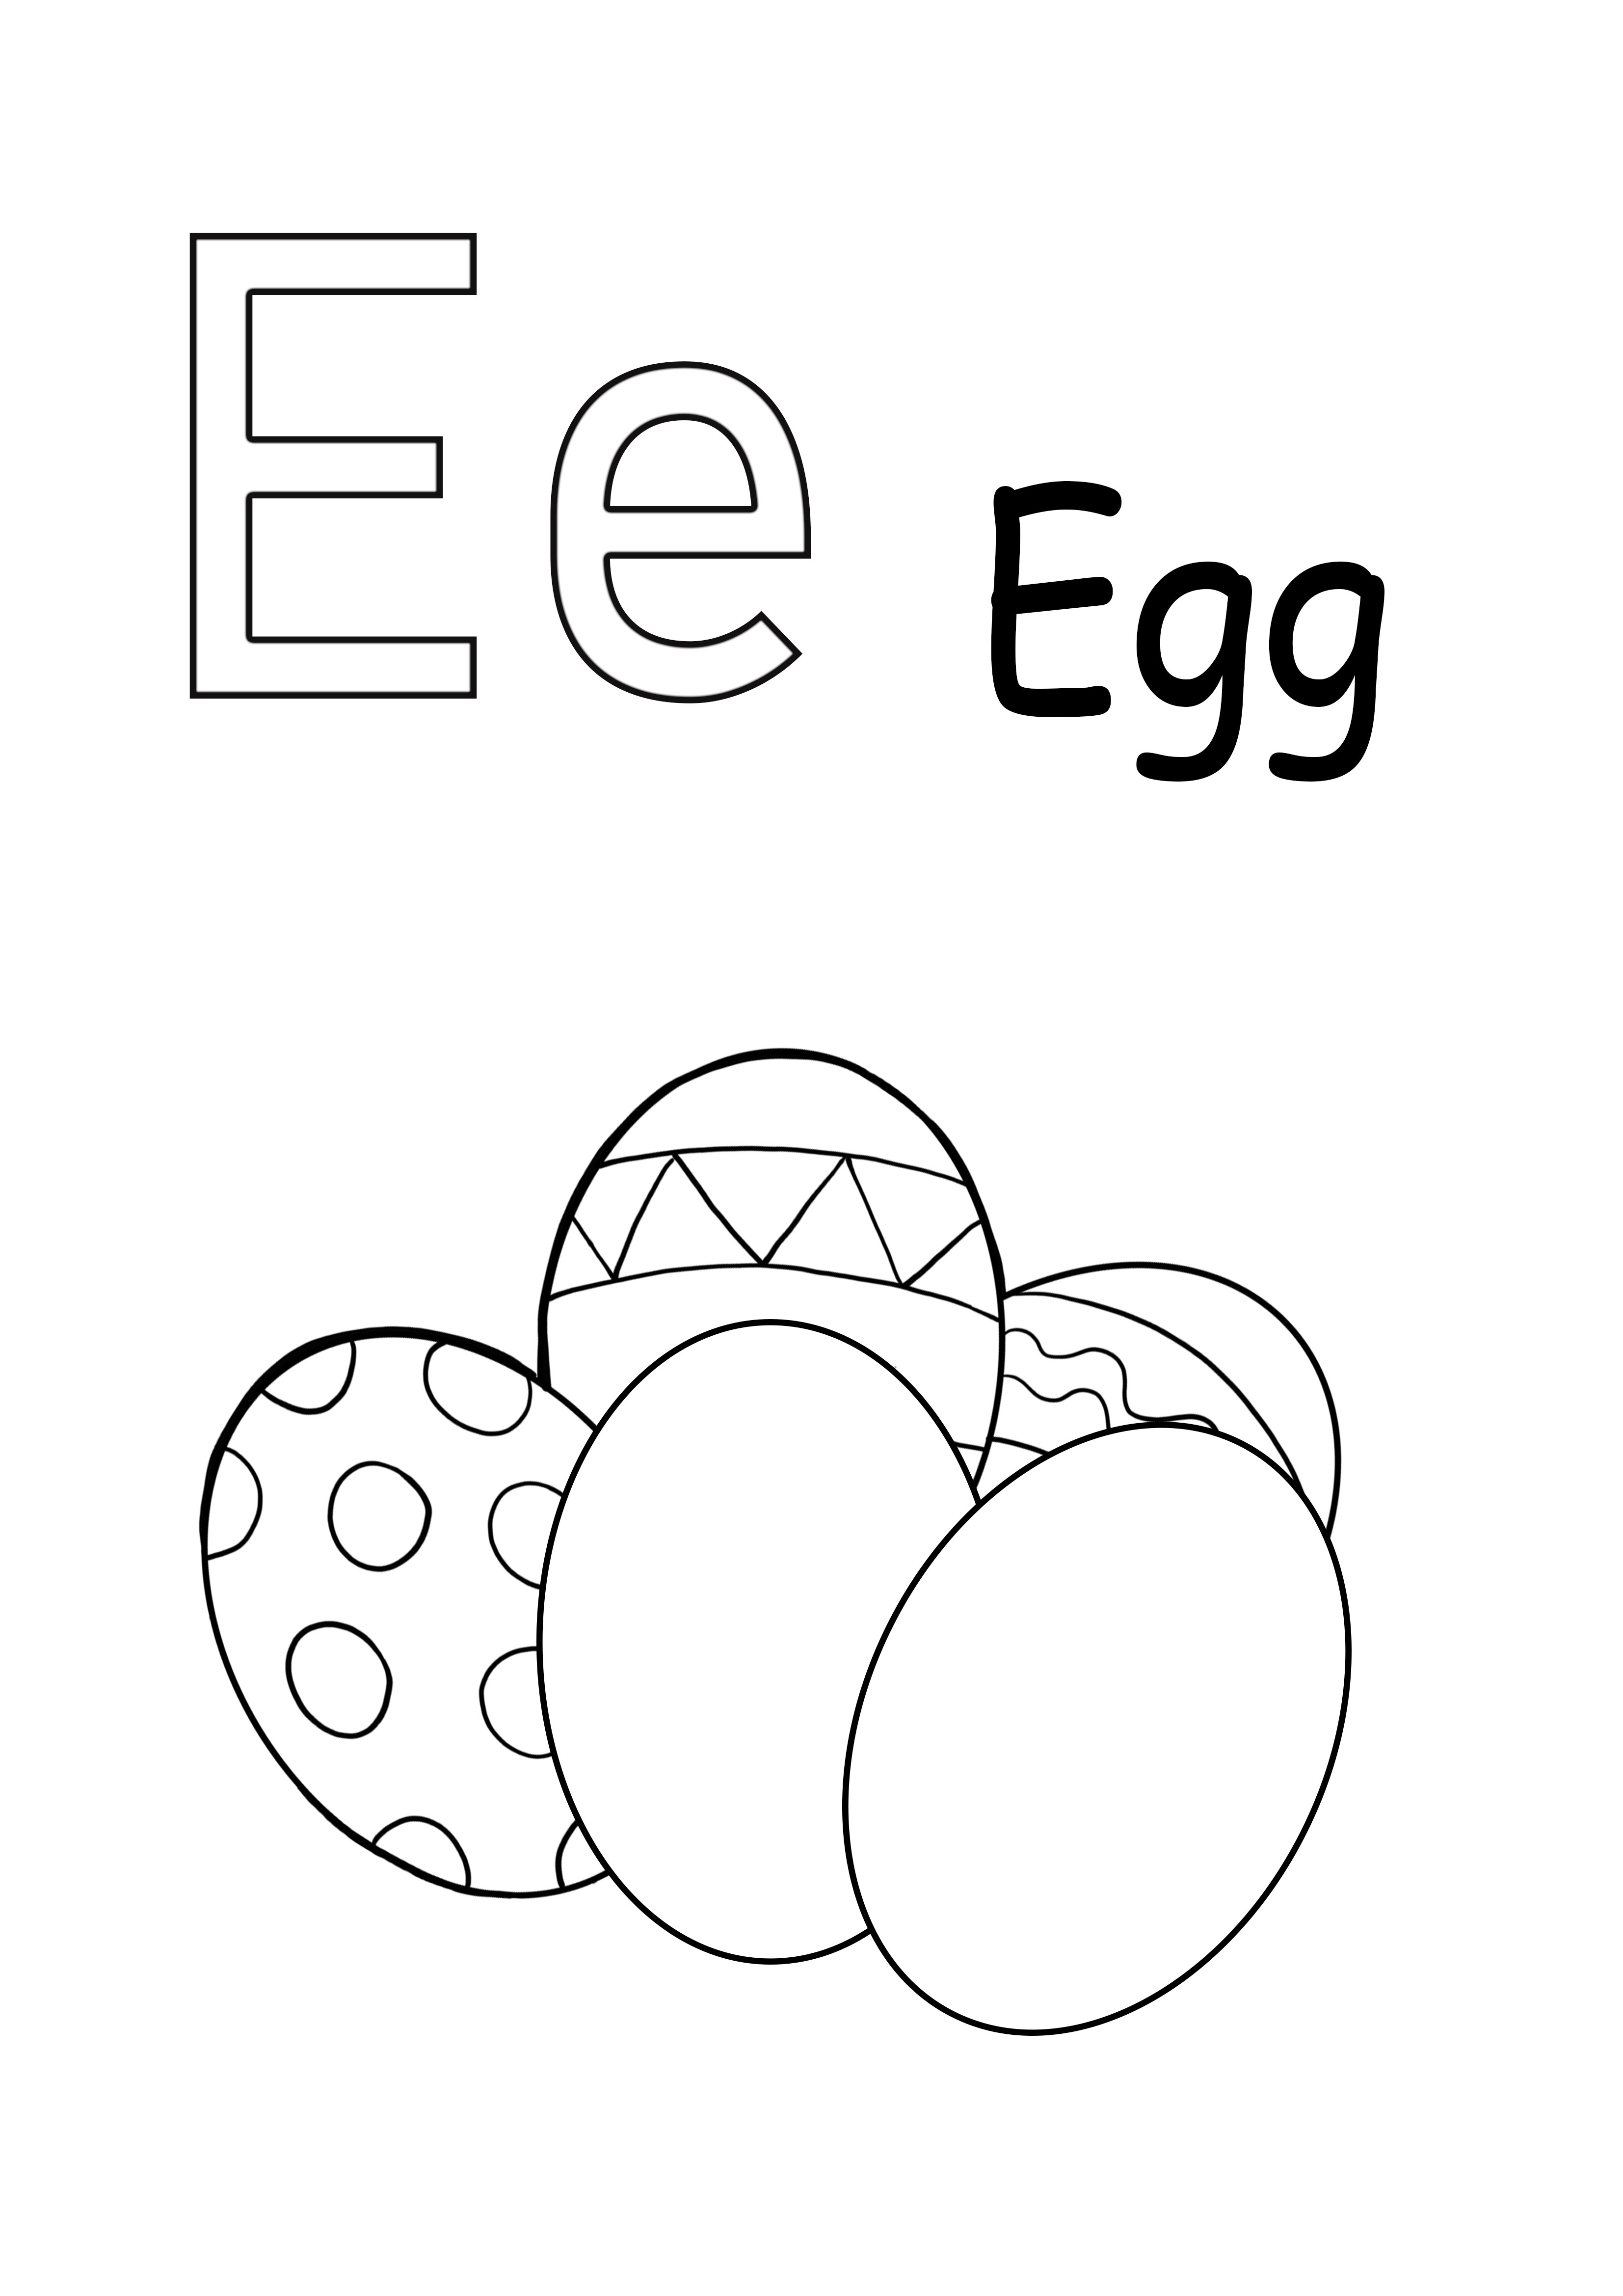 Huruf E untuk lembar cetak telur untuk pewarnaan sederhana